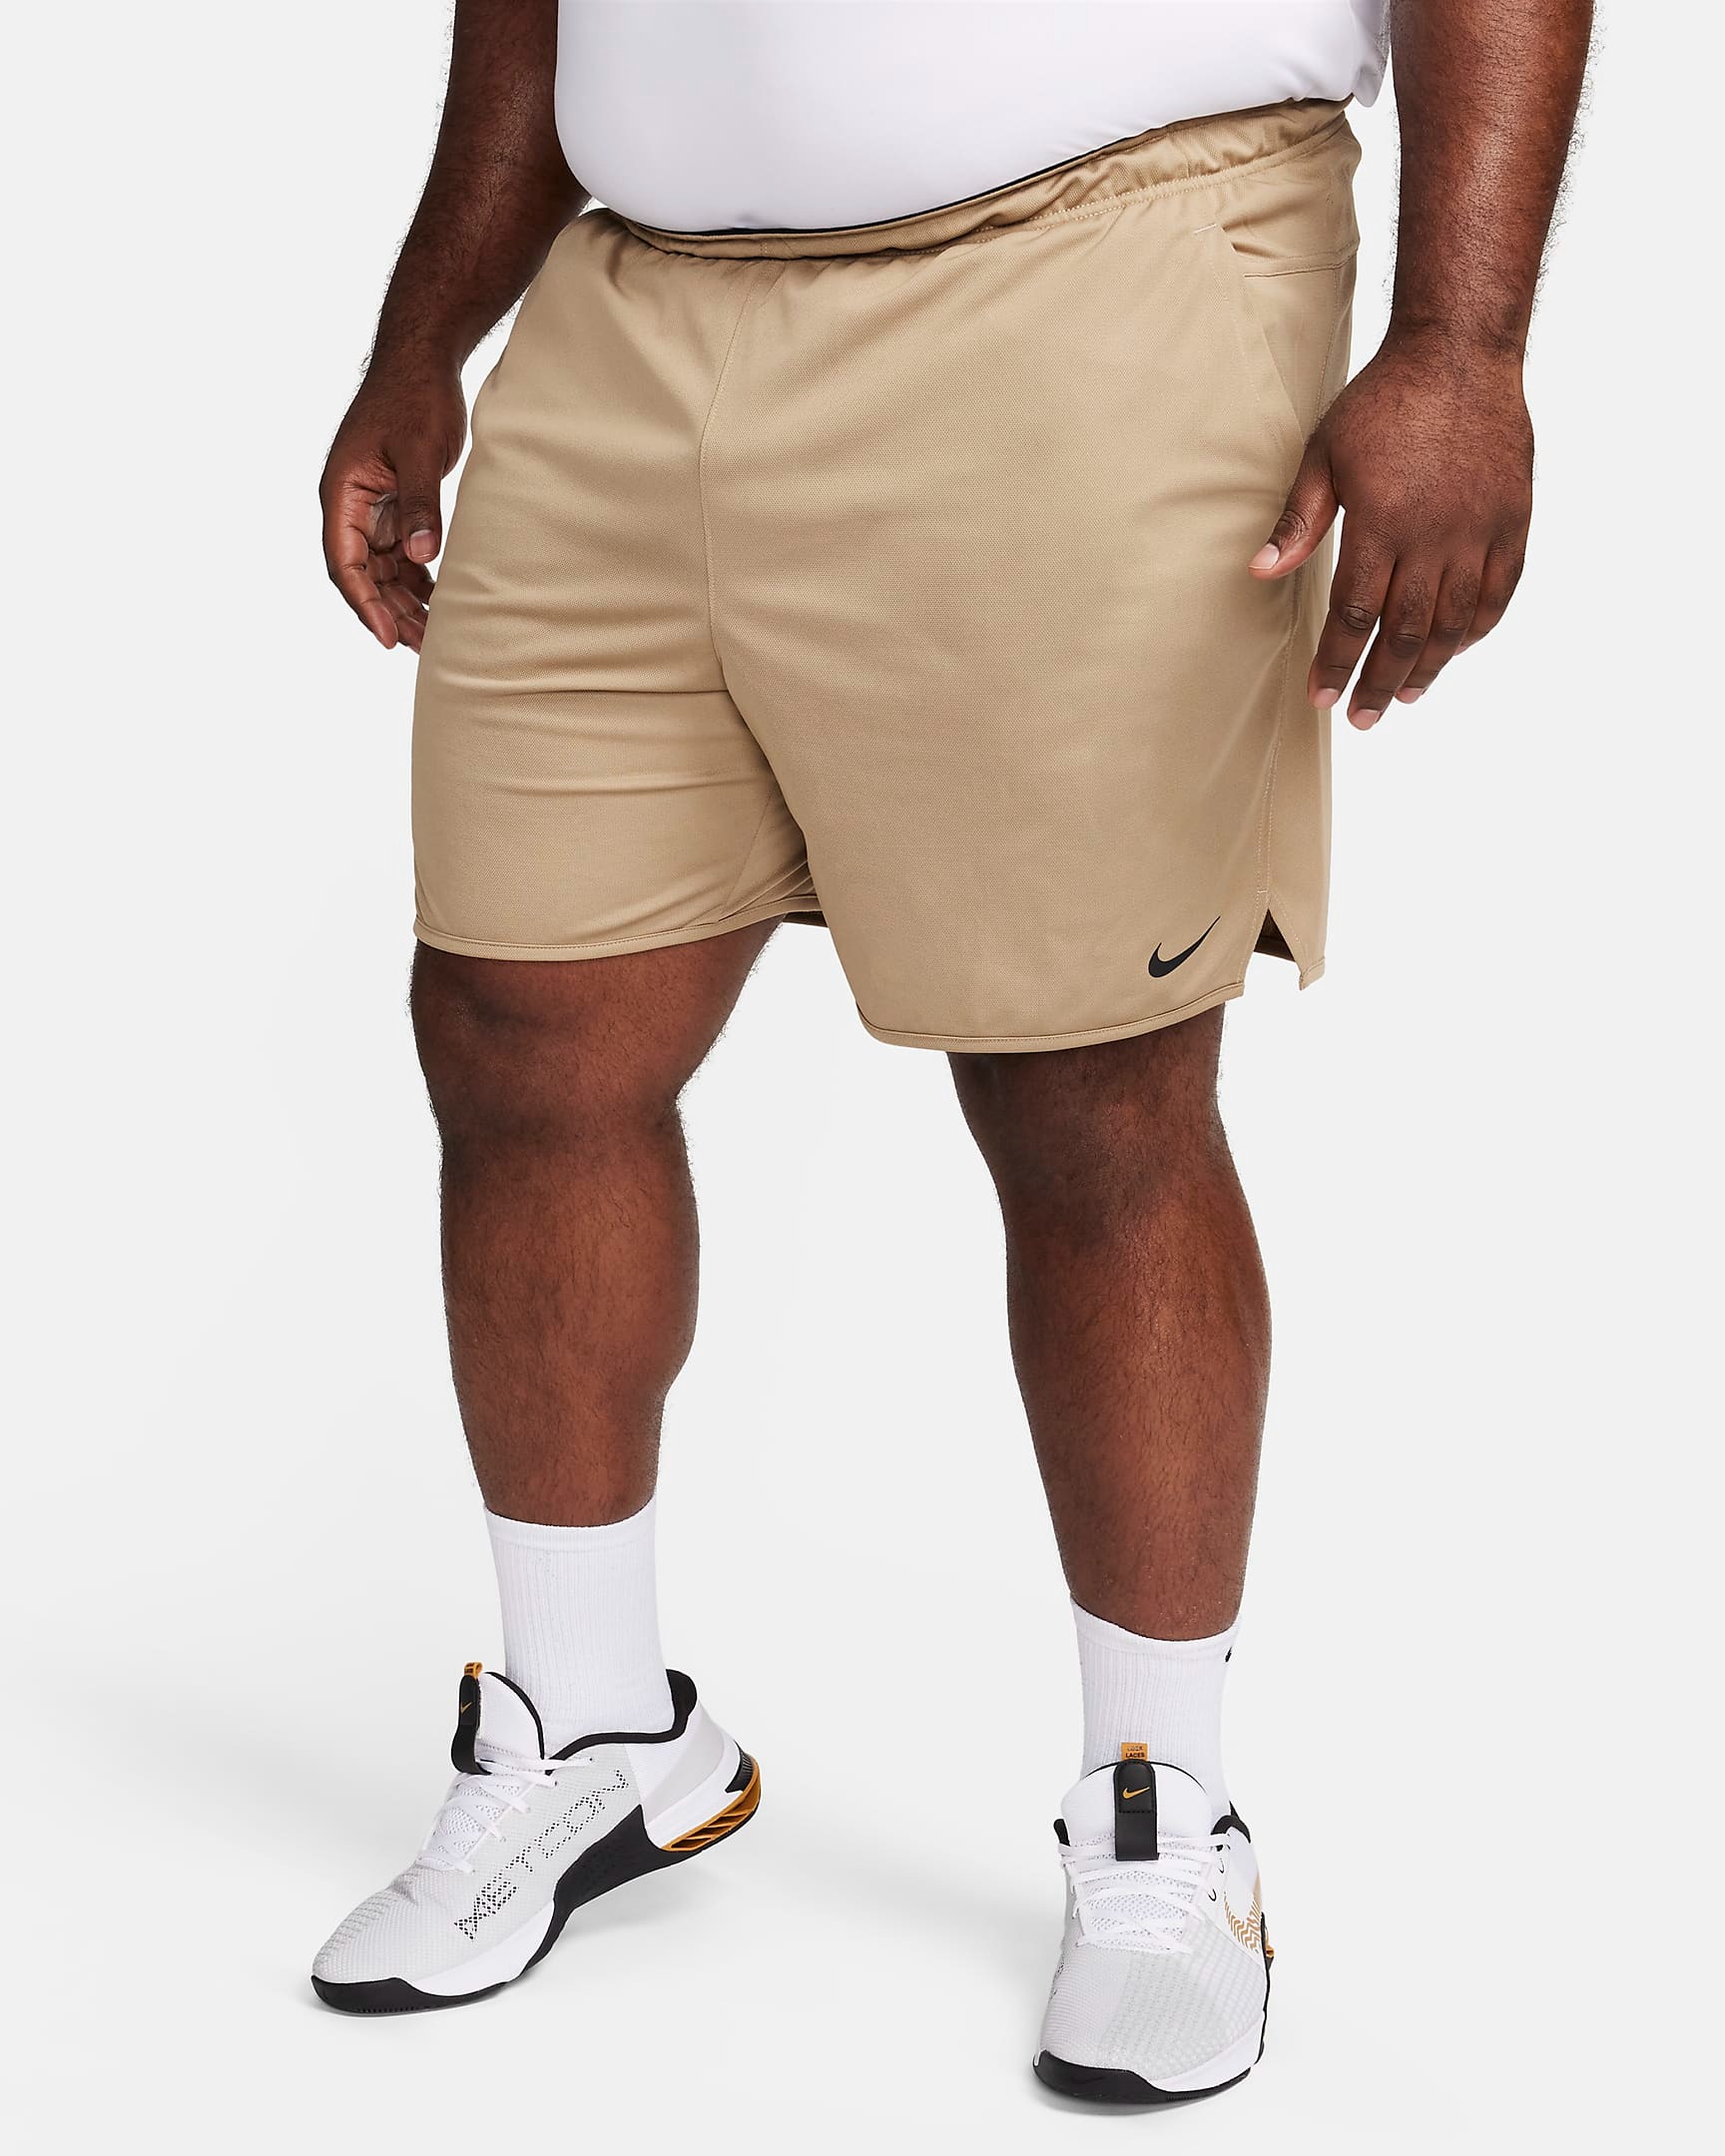 Quần Shorts - Nike Unlined Dri-Fit 'Beige' - FB4196-247